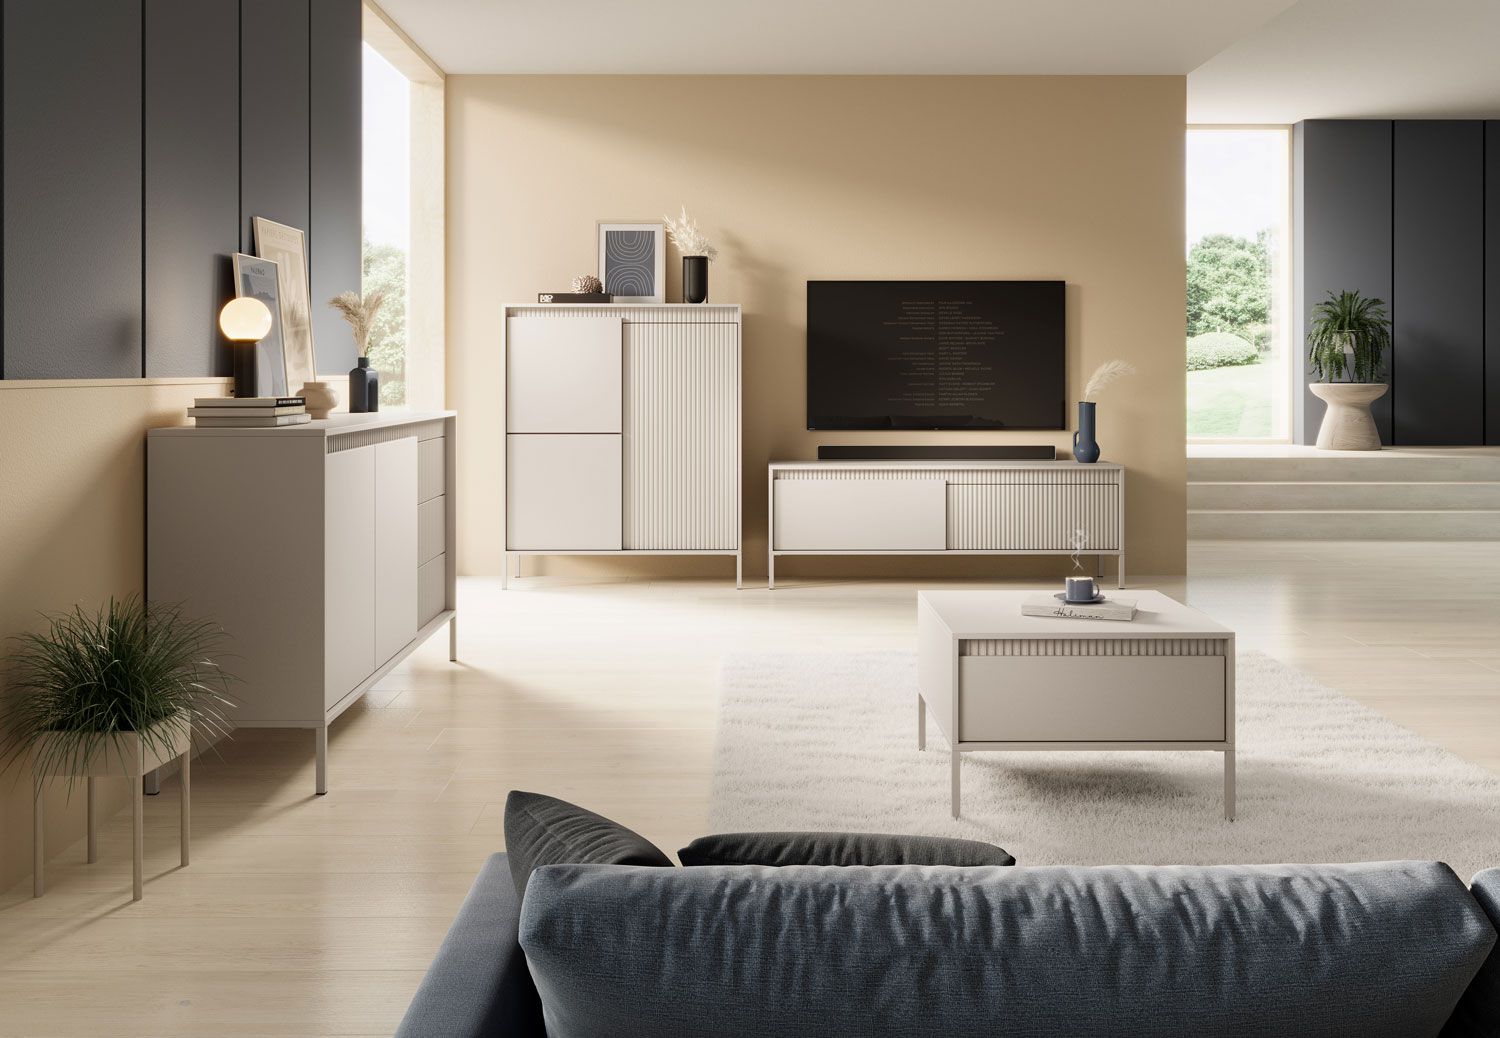 Helles Wohnzimmer - Set A Balta, 4-teilig, Push-to-open Funktion, Farbe: Beige, ABS-Kantenschutz, Beine: Metall